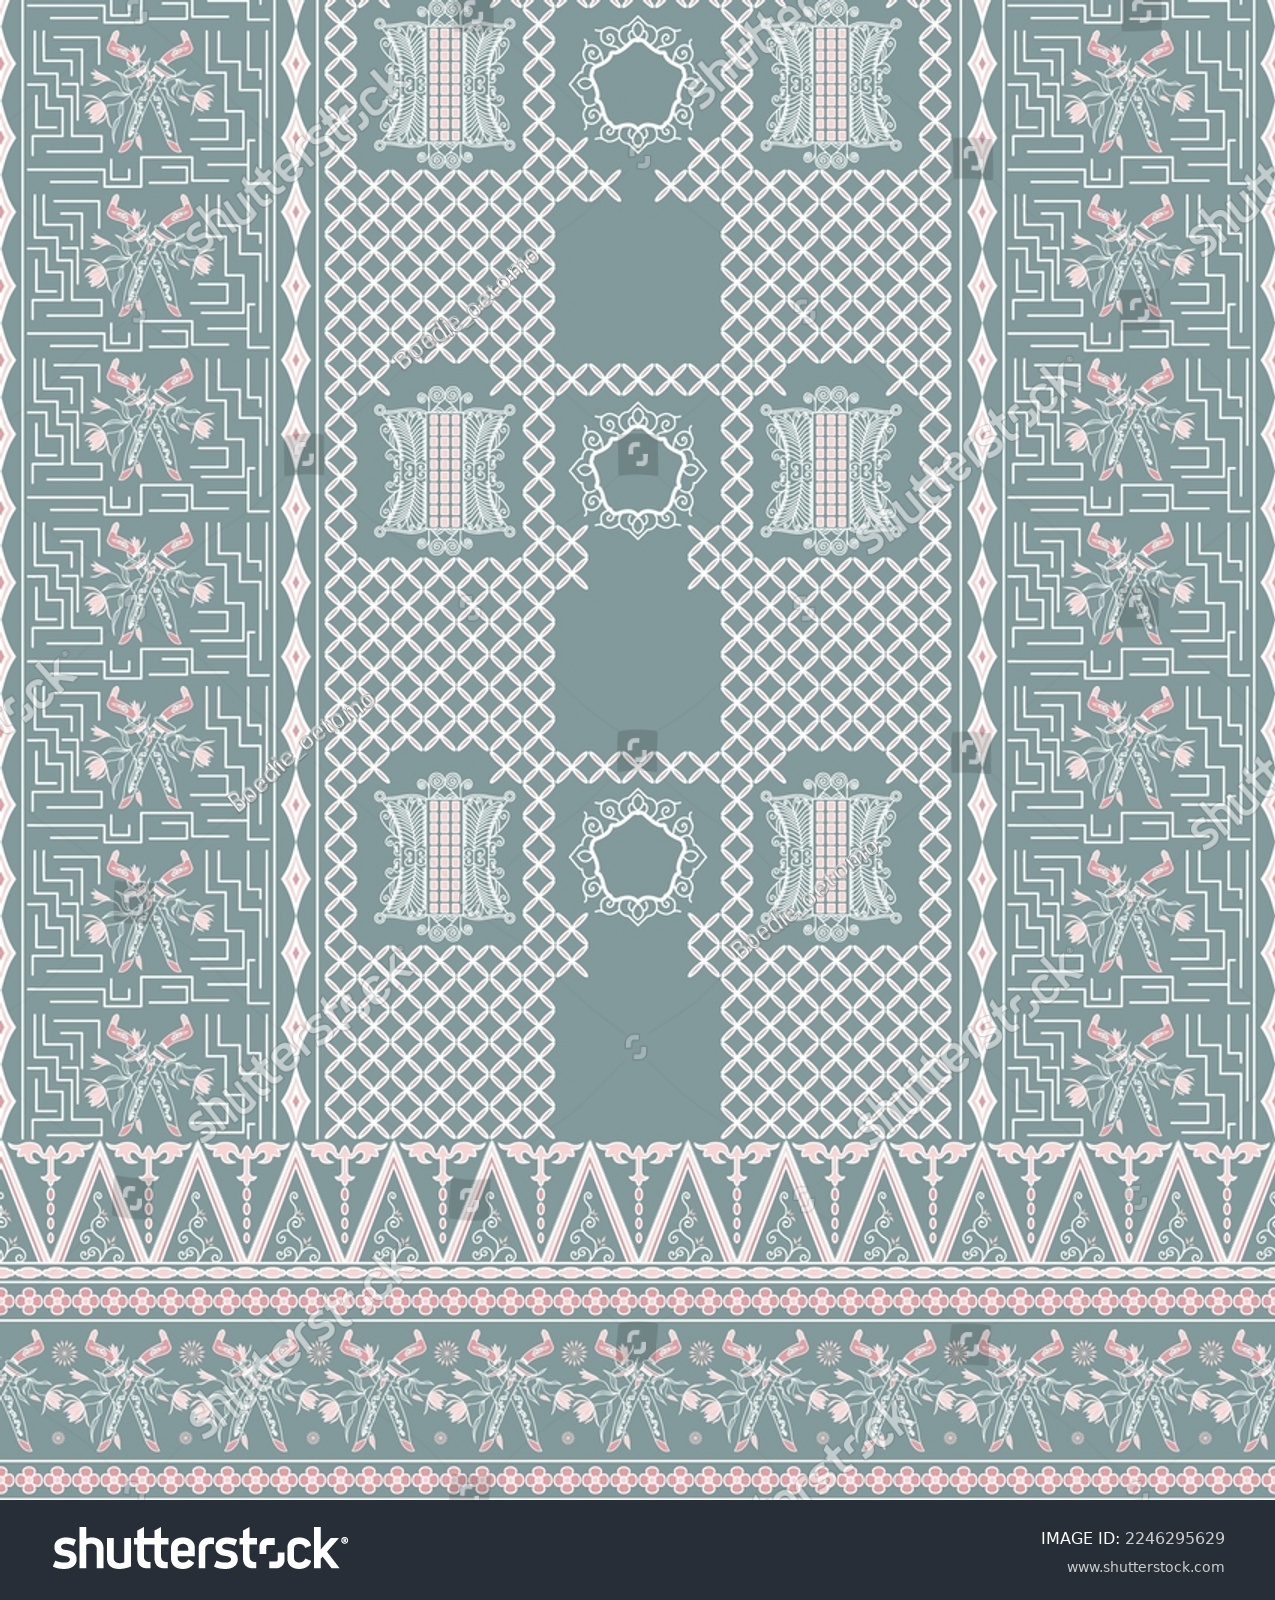 SVG of Indonesian traditional batik pattern. aceh batik. svg